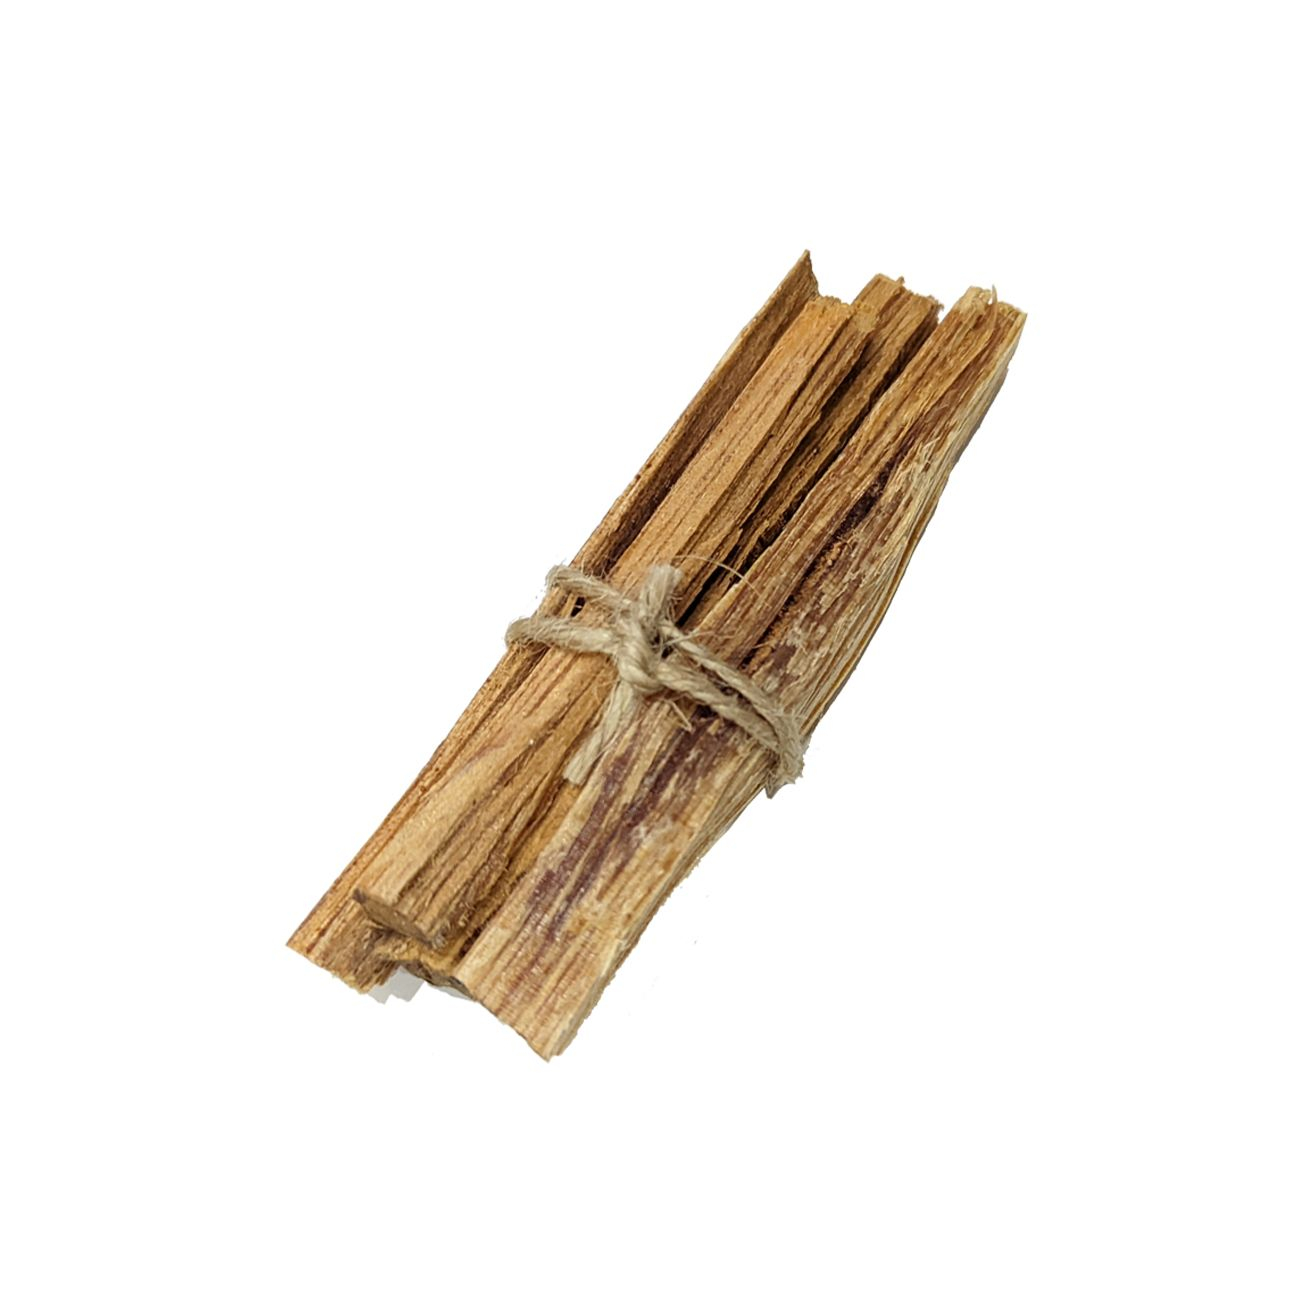 Podpalovač ze dřeva Tidner Sticks 35g